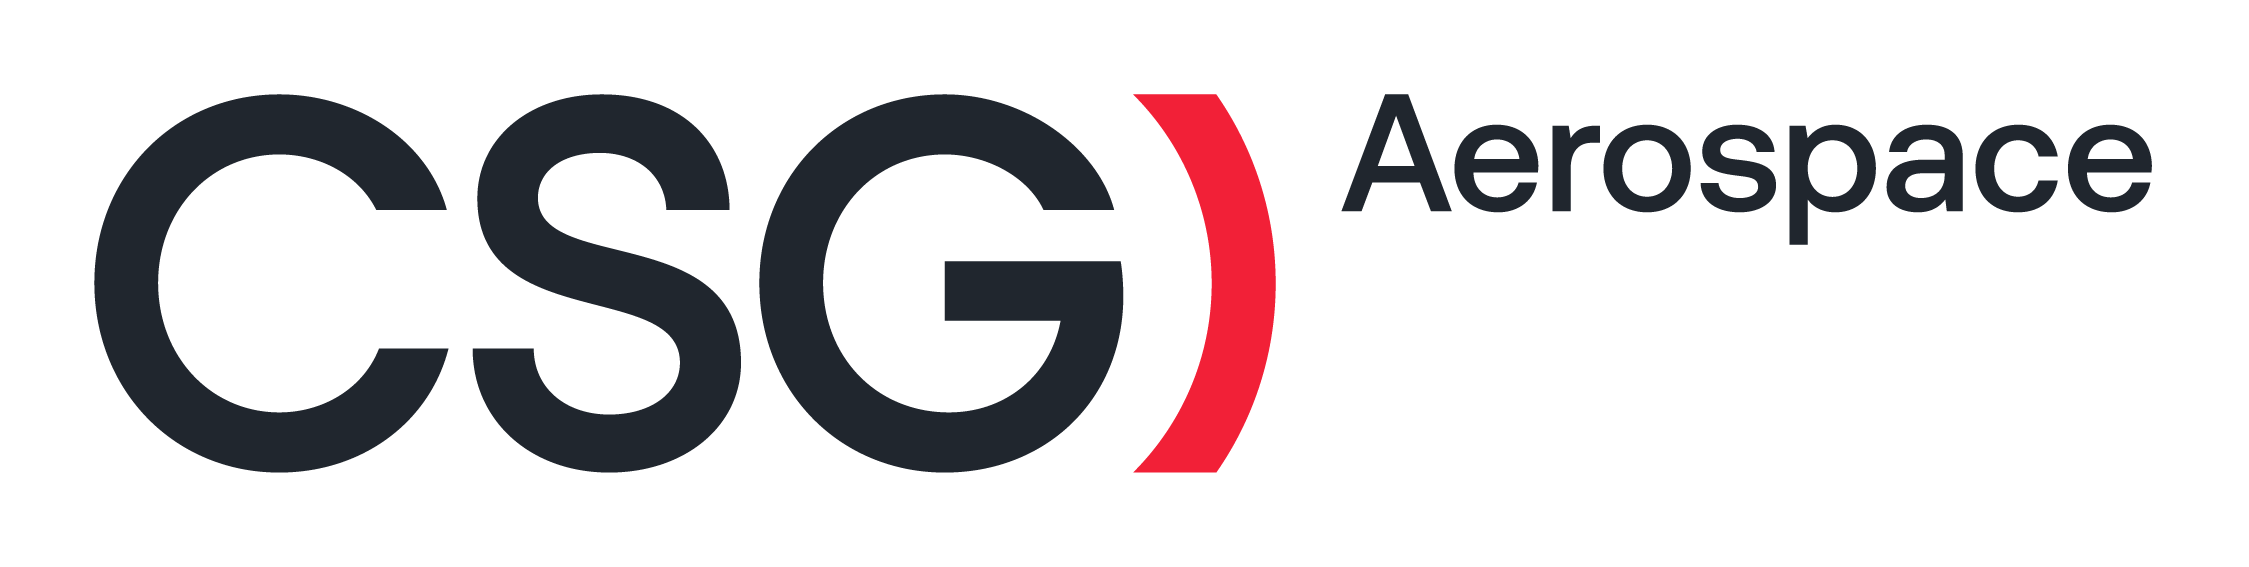 CSG-Aerospace_logo_RGB (2)